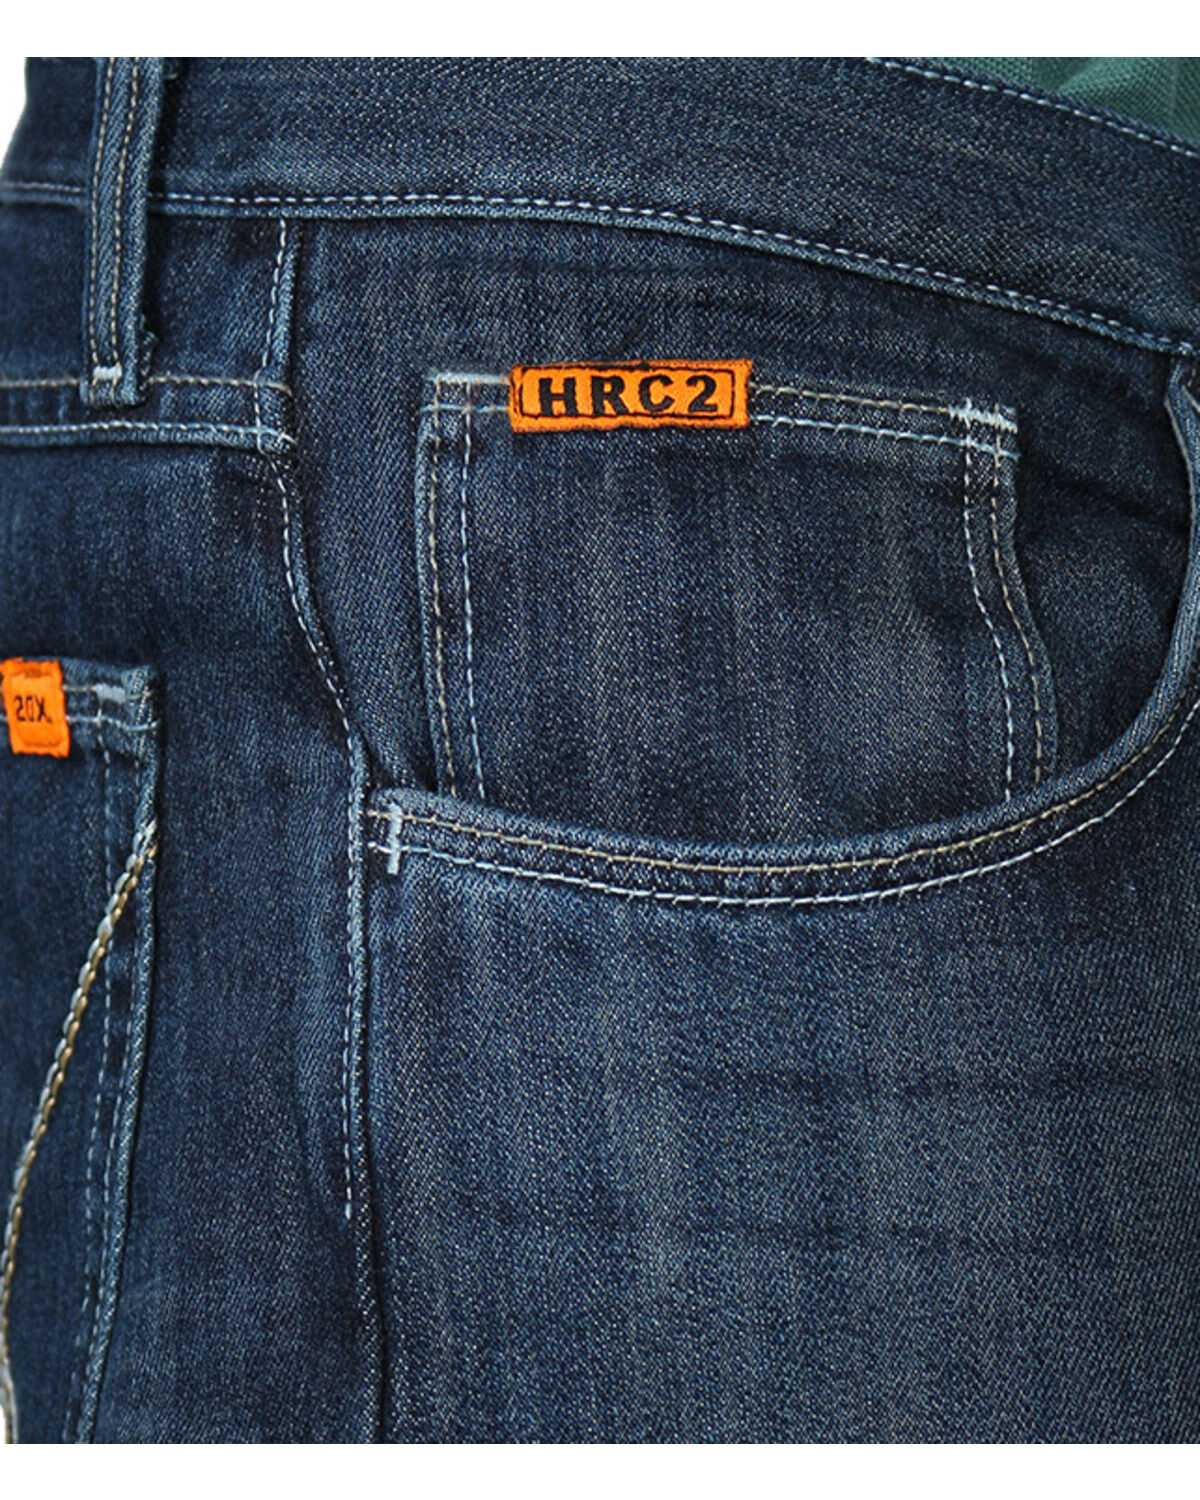 wrangler fr jeans 20x